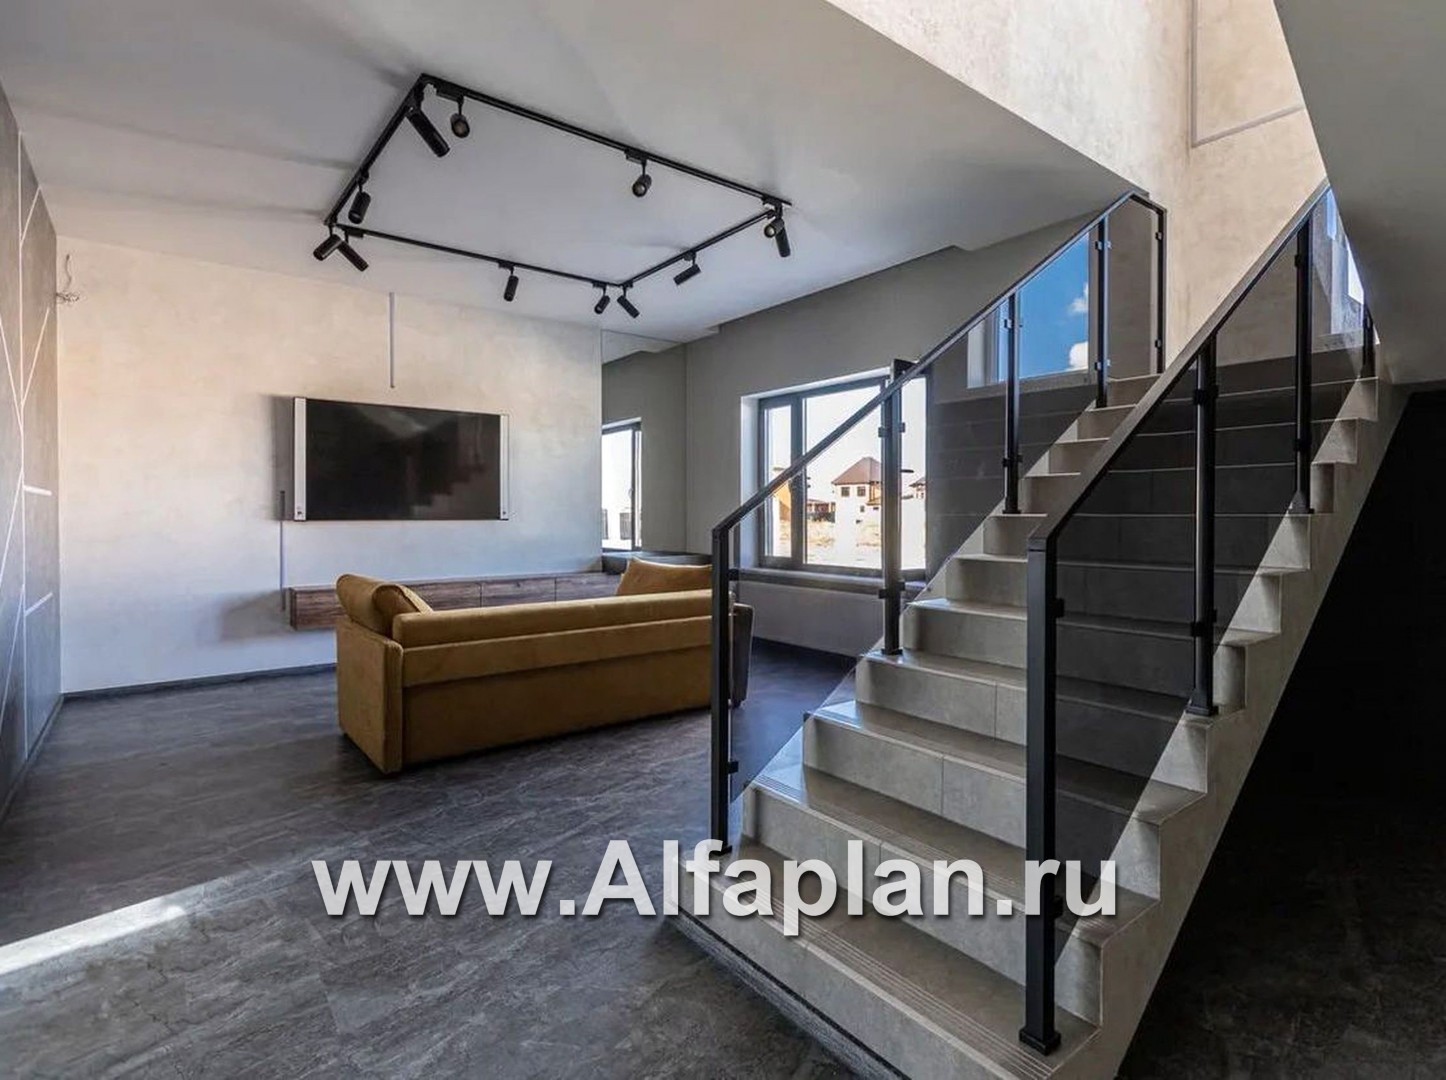 Проекты домов Альфаплан - «Дипломат Плюс» - дом с бильярдной и гаражом на два автомобиля - дополнительное изображение №5